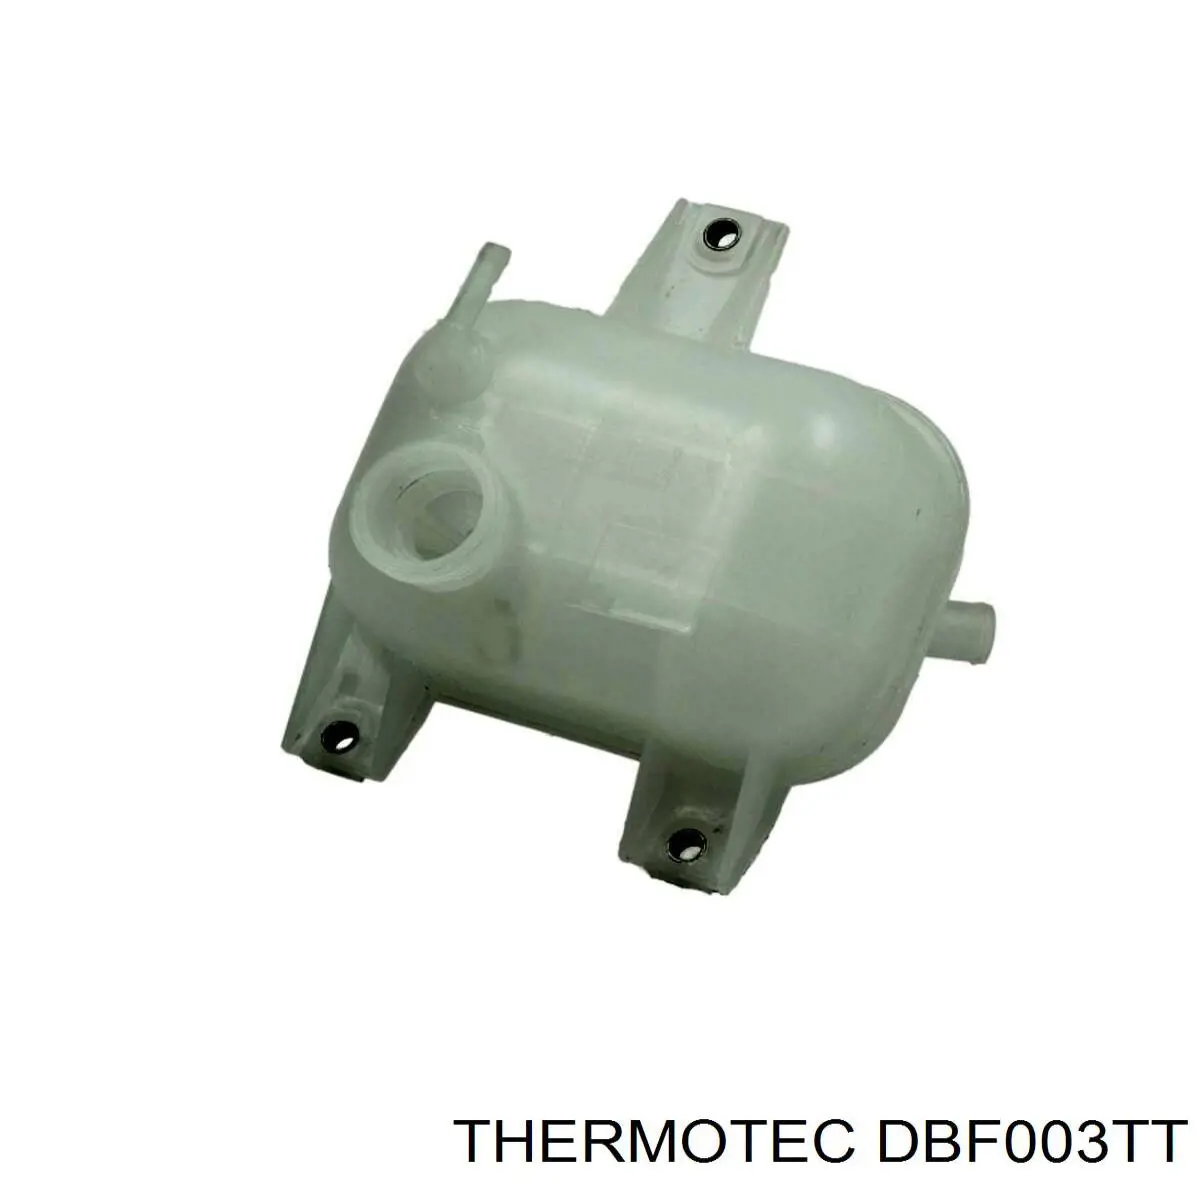 DBF003TT Thermotec vaso de expansión